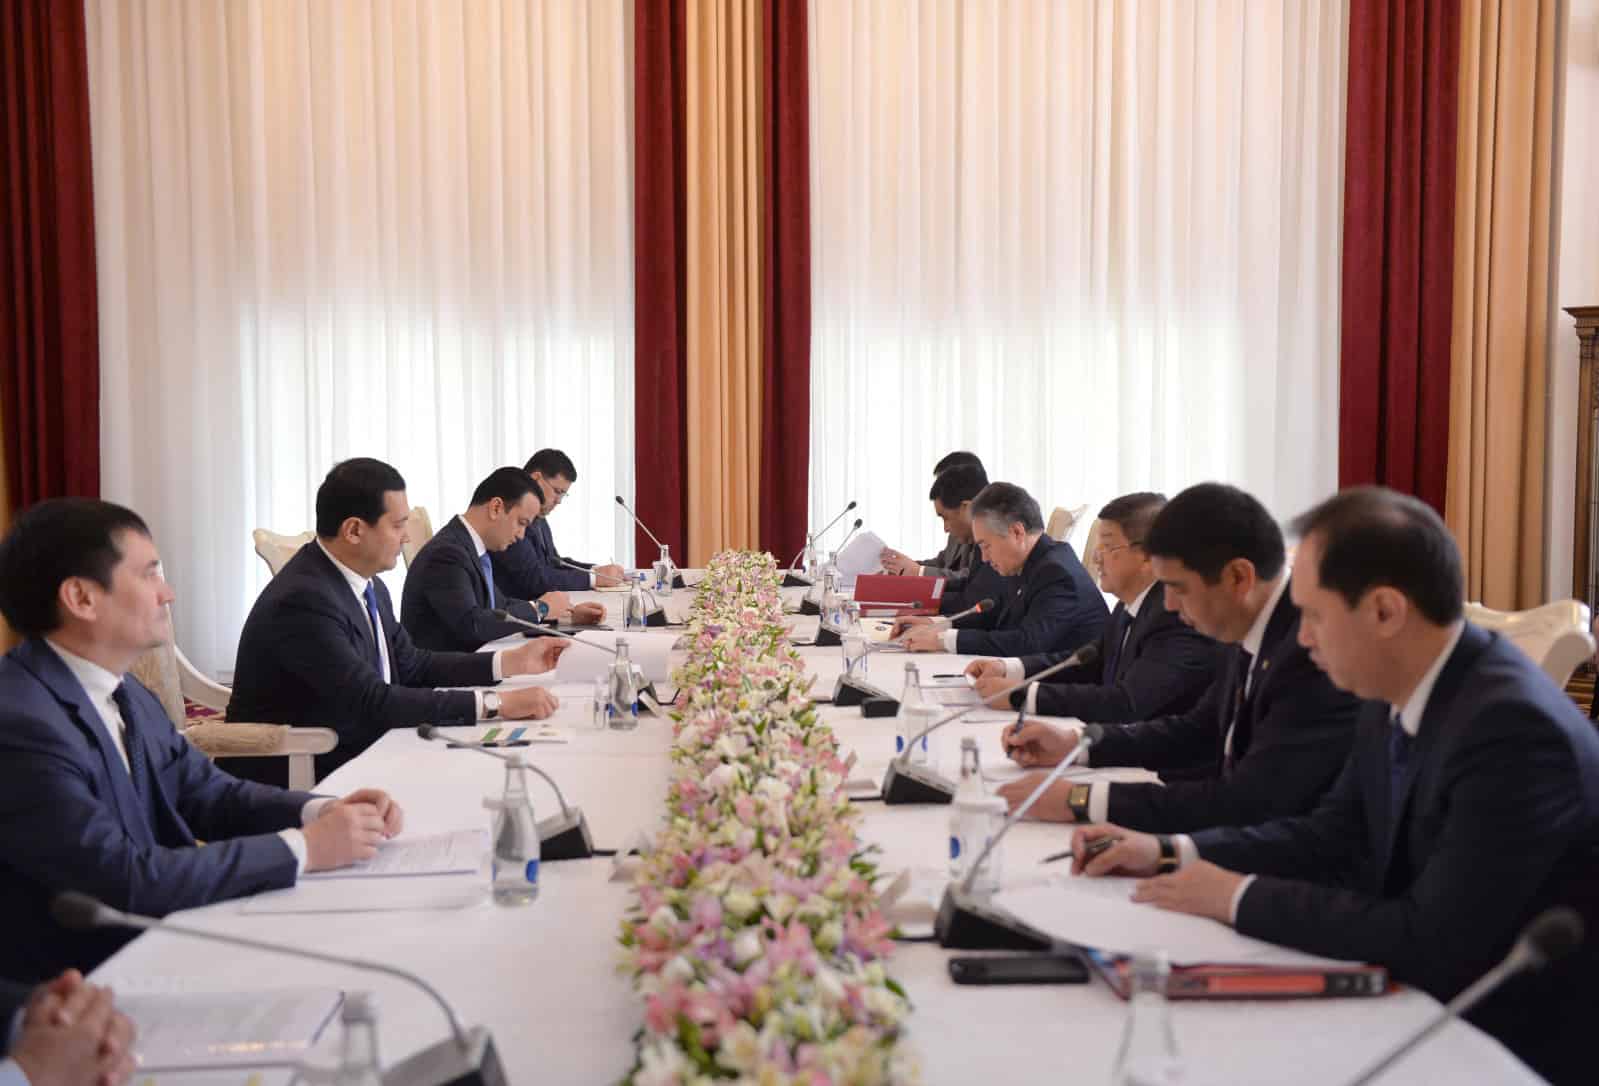 Кыргызстан и Узбекистан обсудили создание совместных предприятий и логистических центров